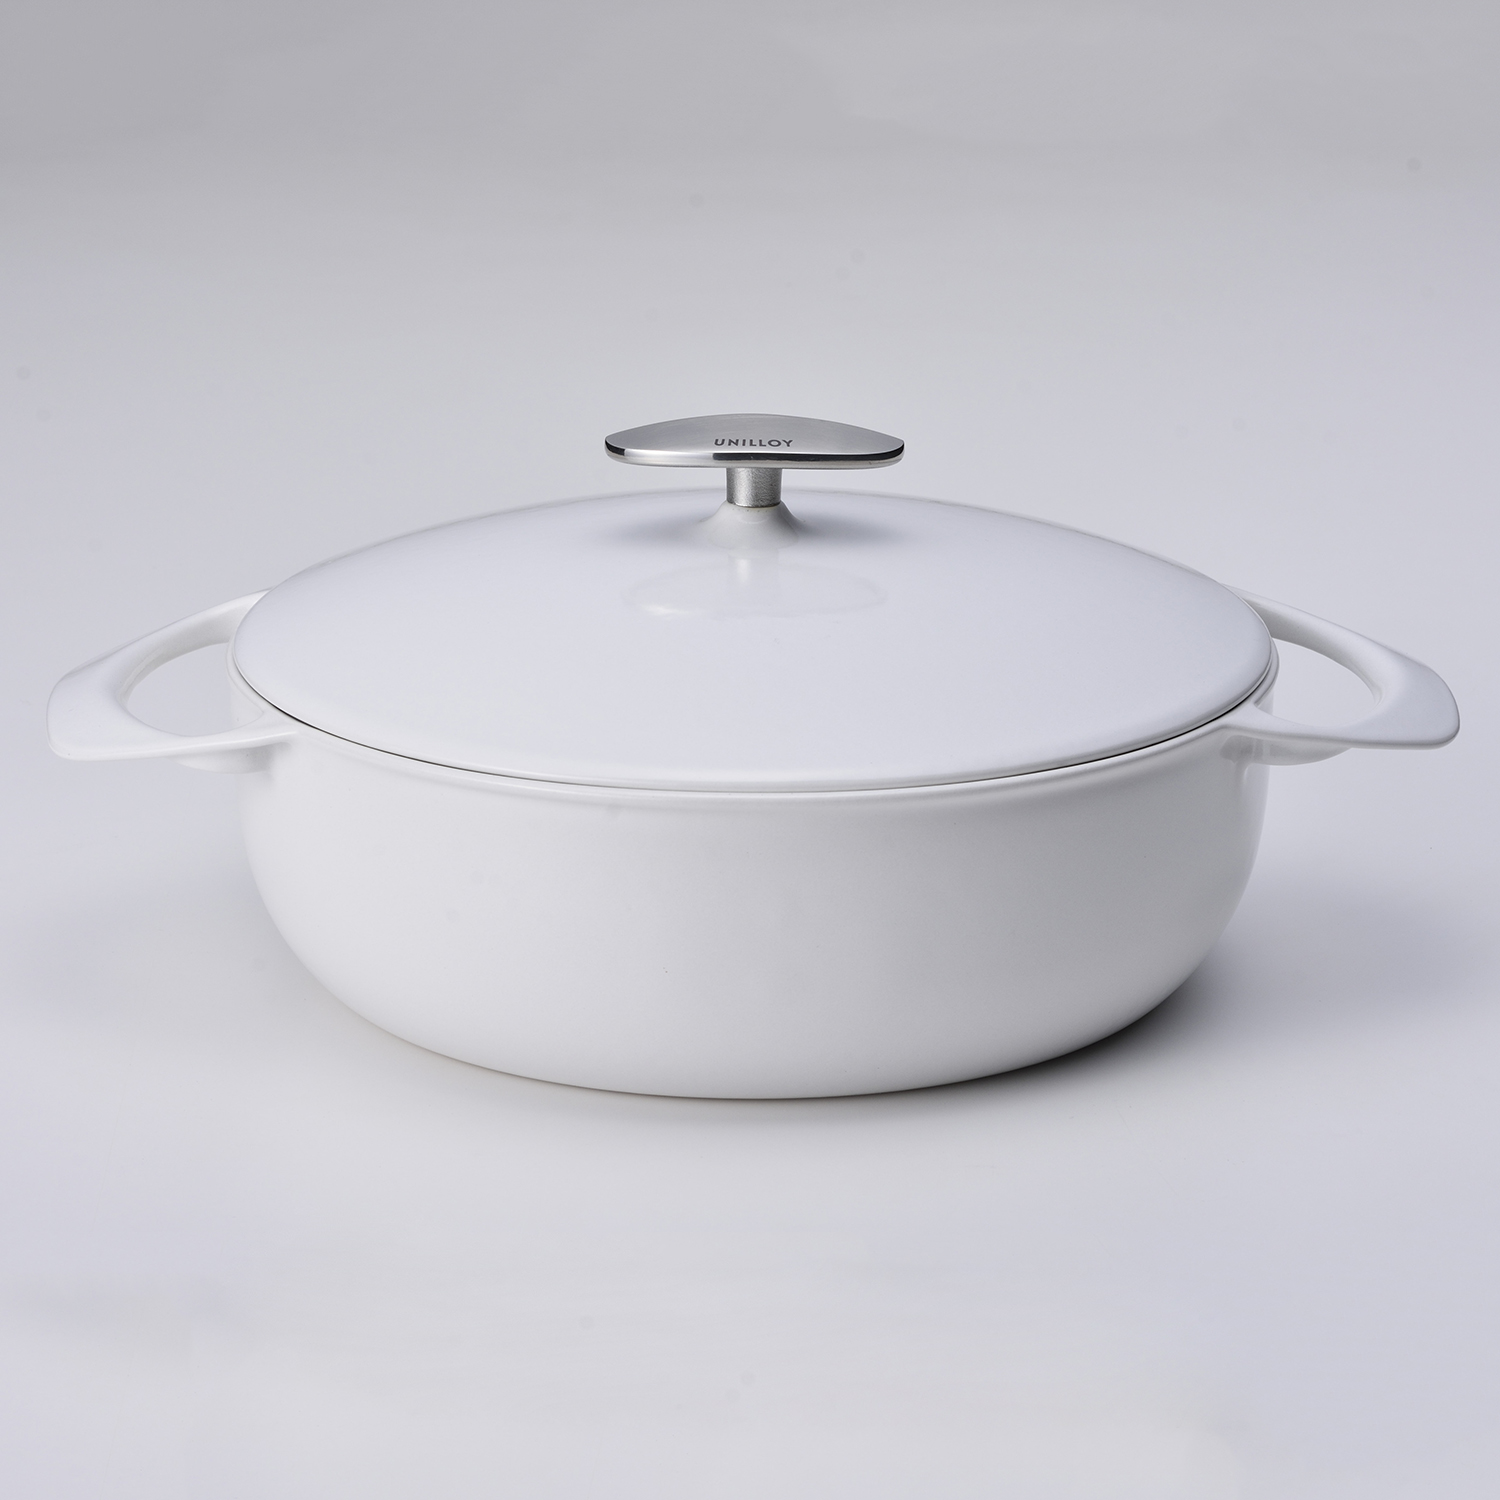 UNILLOY/キャセロール 浅型 cm  軽い鋳物ホーロー鍋で、いつもの料理